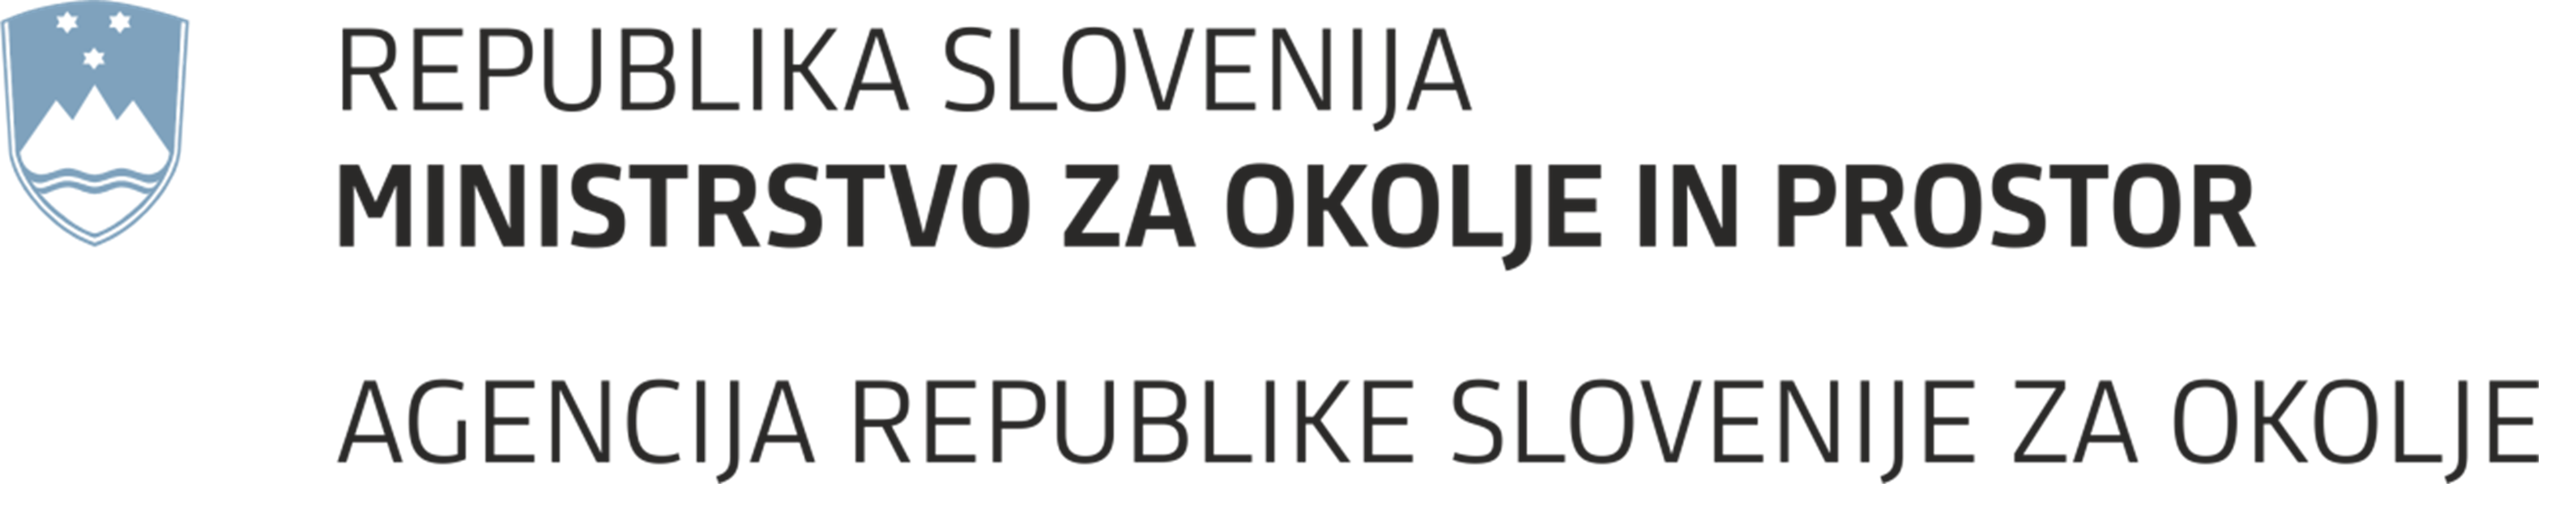 Logotip Agencije Republike Slovenije za okolje in prostor